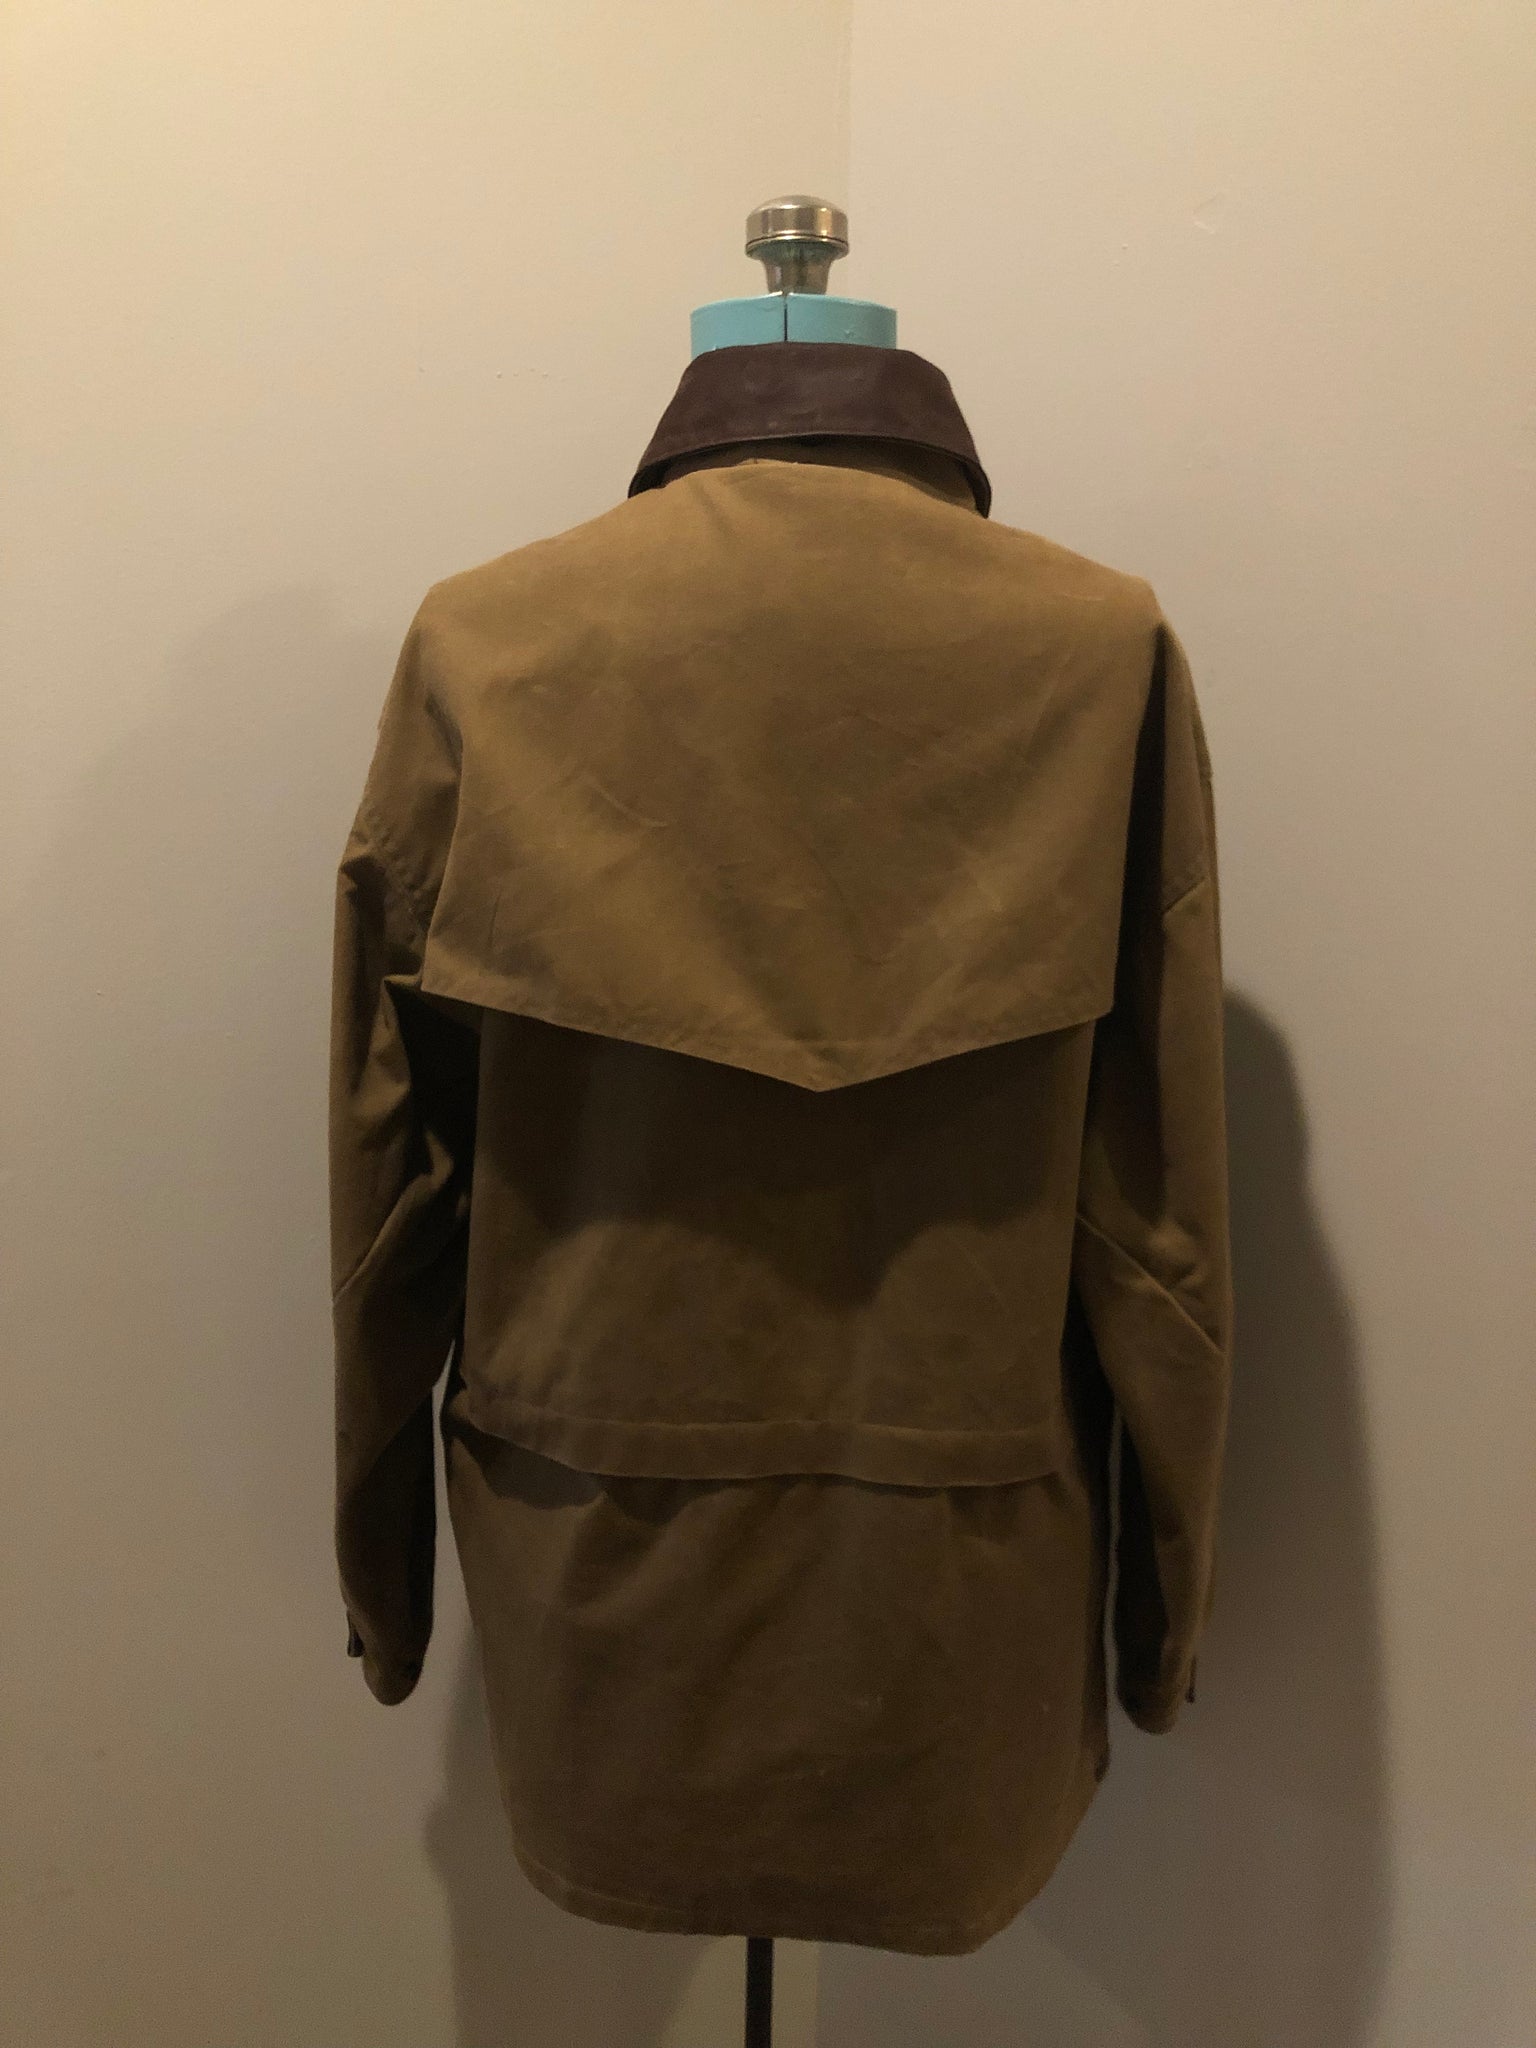 Vintage Australian Outback Jacket, Made in Canada SOLD – KingsPIER vintage